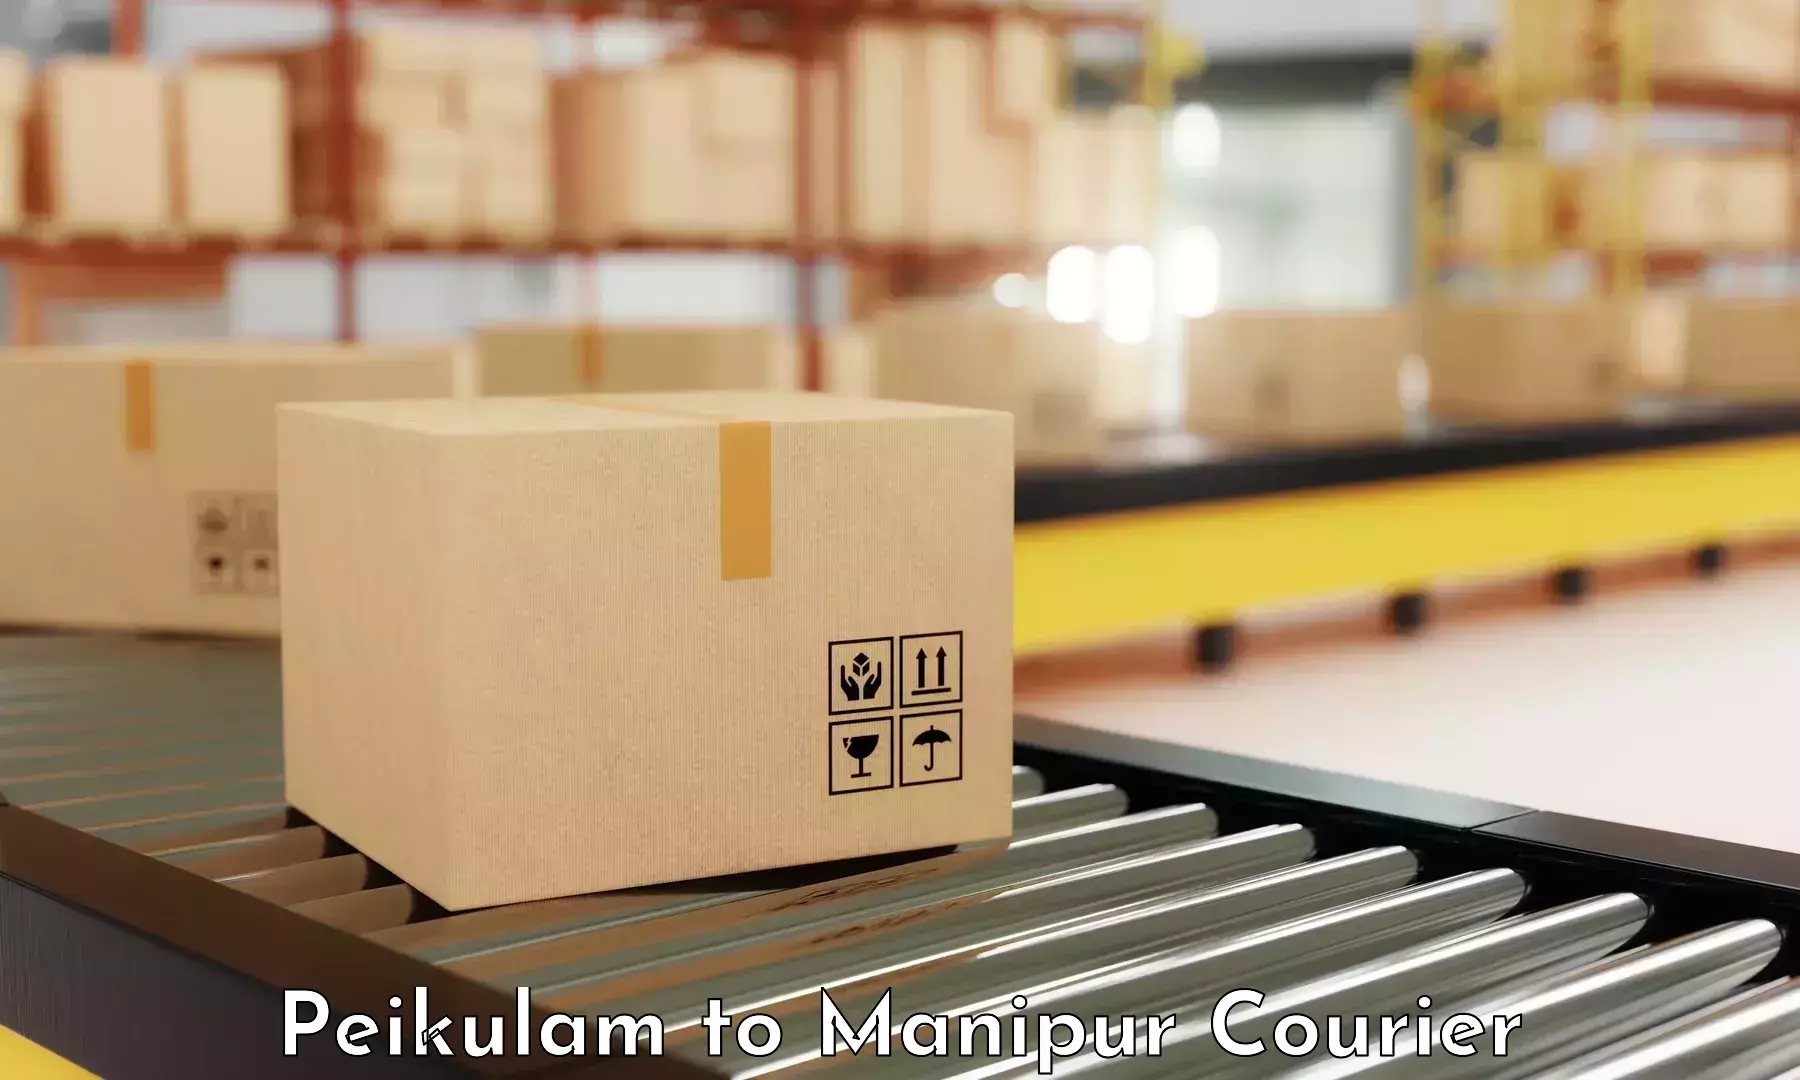 Urgent courier needs Peikulam to Ukhrul